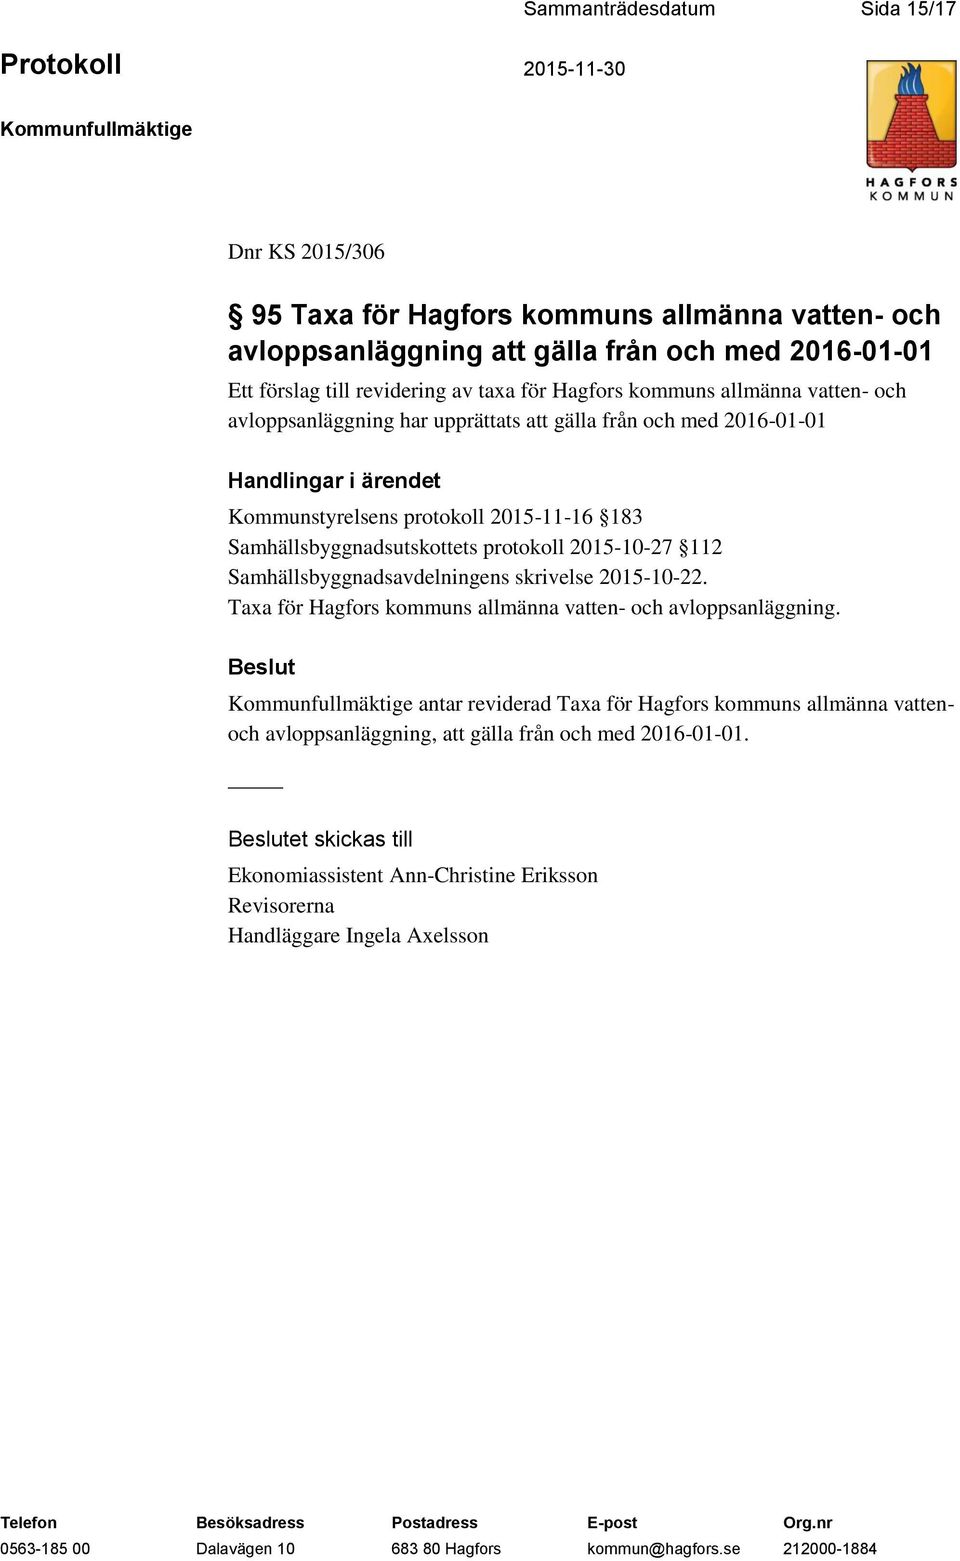 Samhällsbyggnadsutskottets protokoll 2015-10-27 112 Samhällsbyggnadsavdelningens skrivelse 2015-10-22. Taxa för Hagfors kommuns allmänna vatten- och avloppsanläggning.